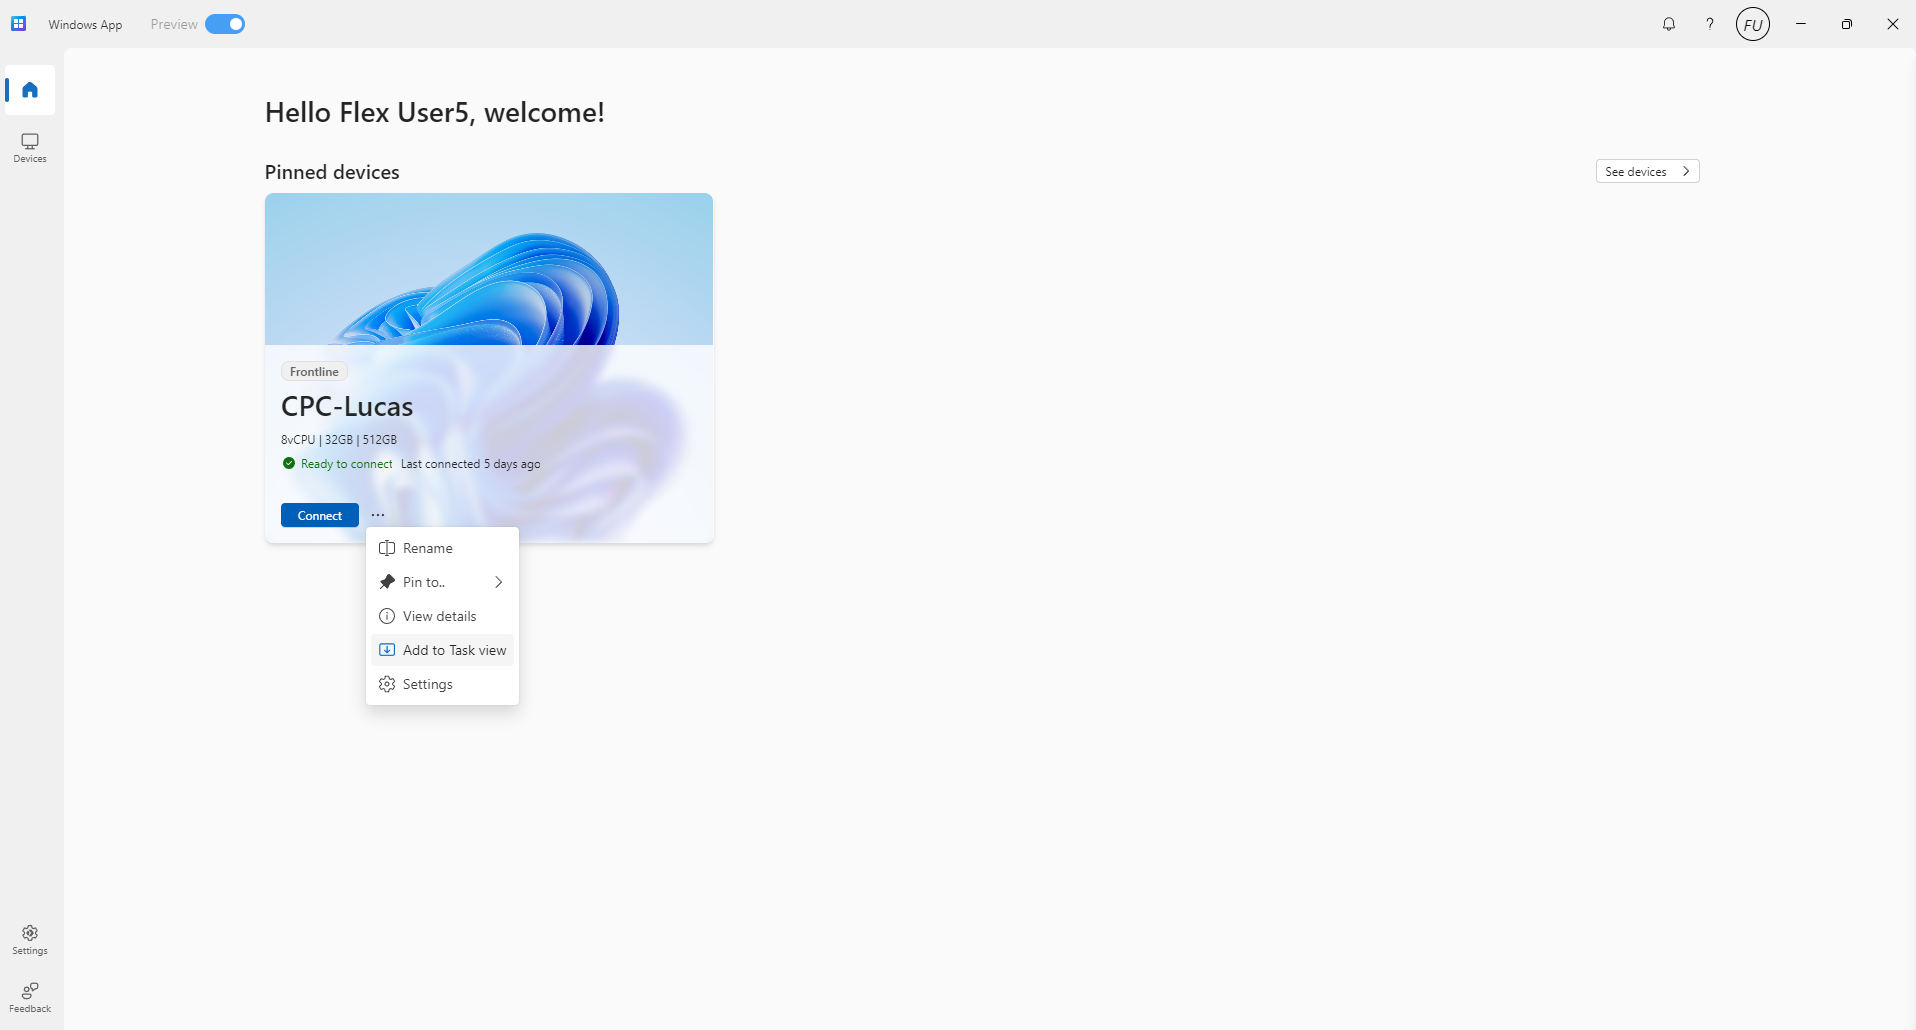 Homepage of Windows App